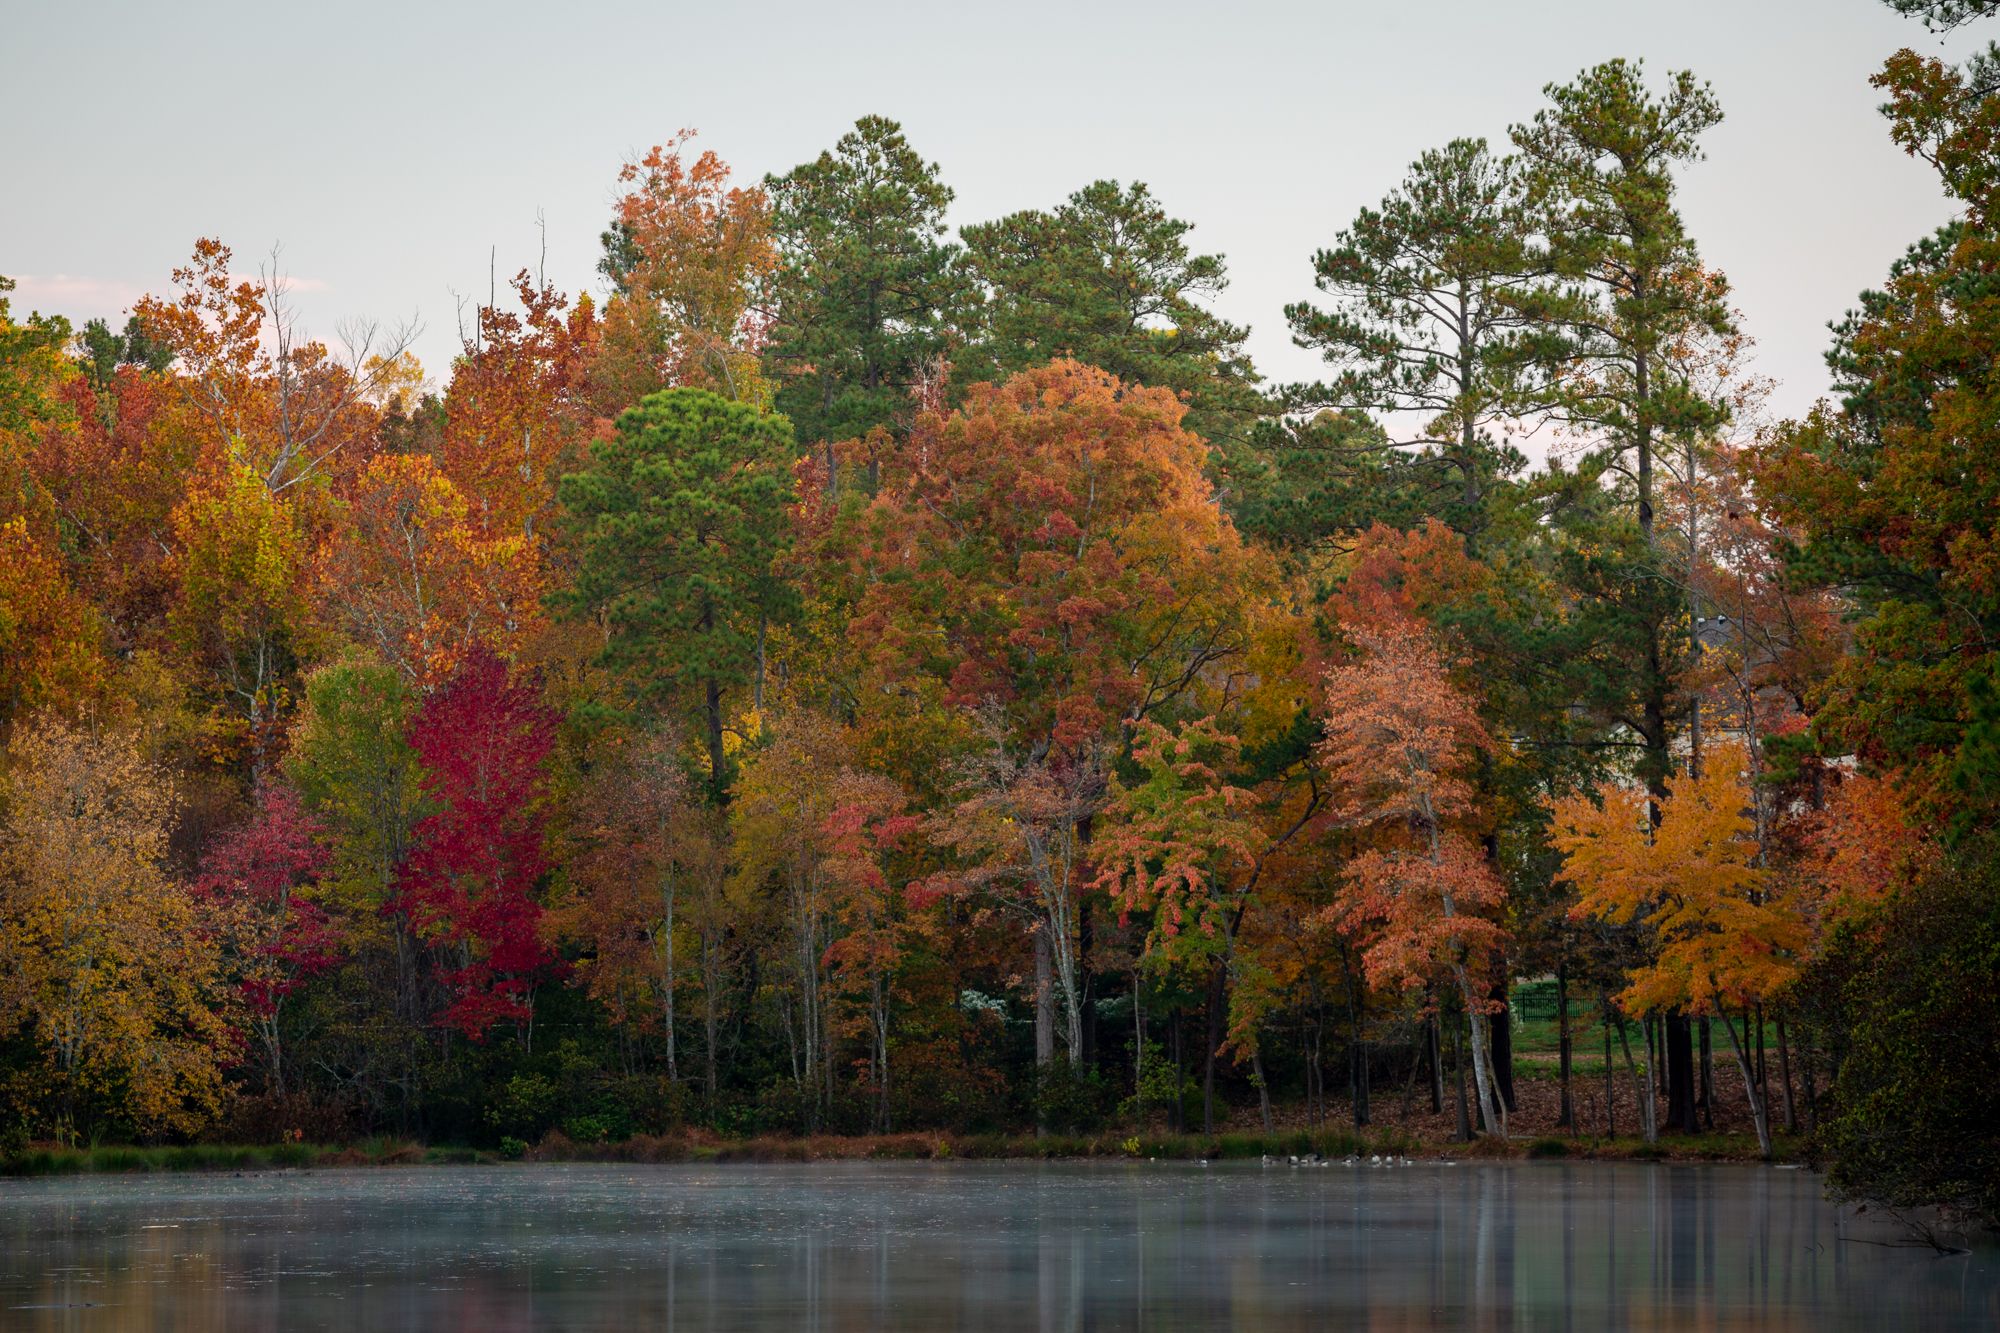 Fall colors at a local lake in Cary, North Carolina